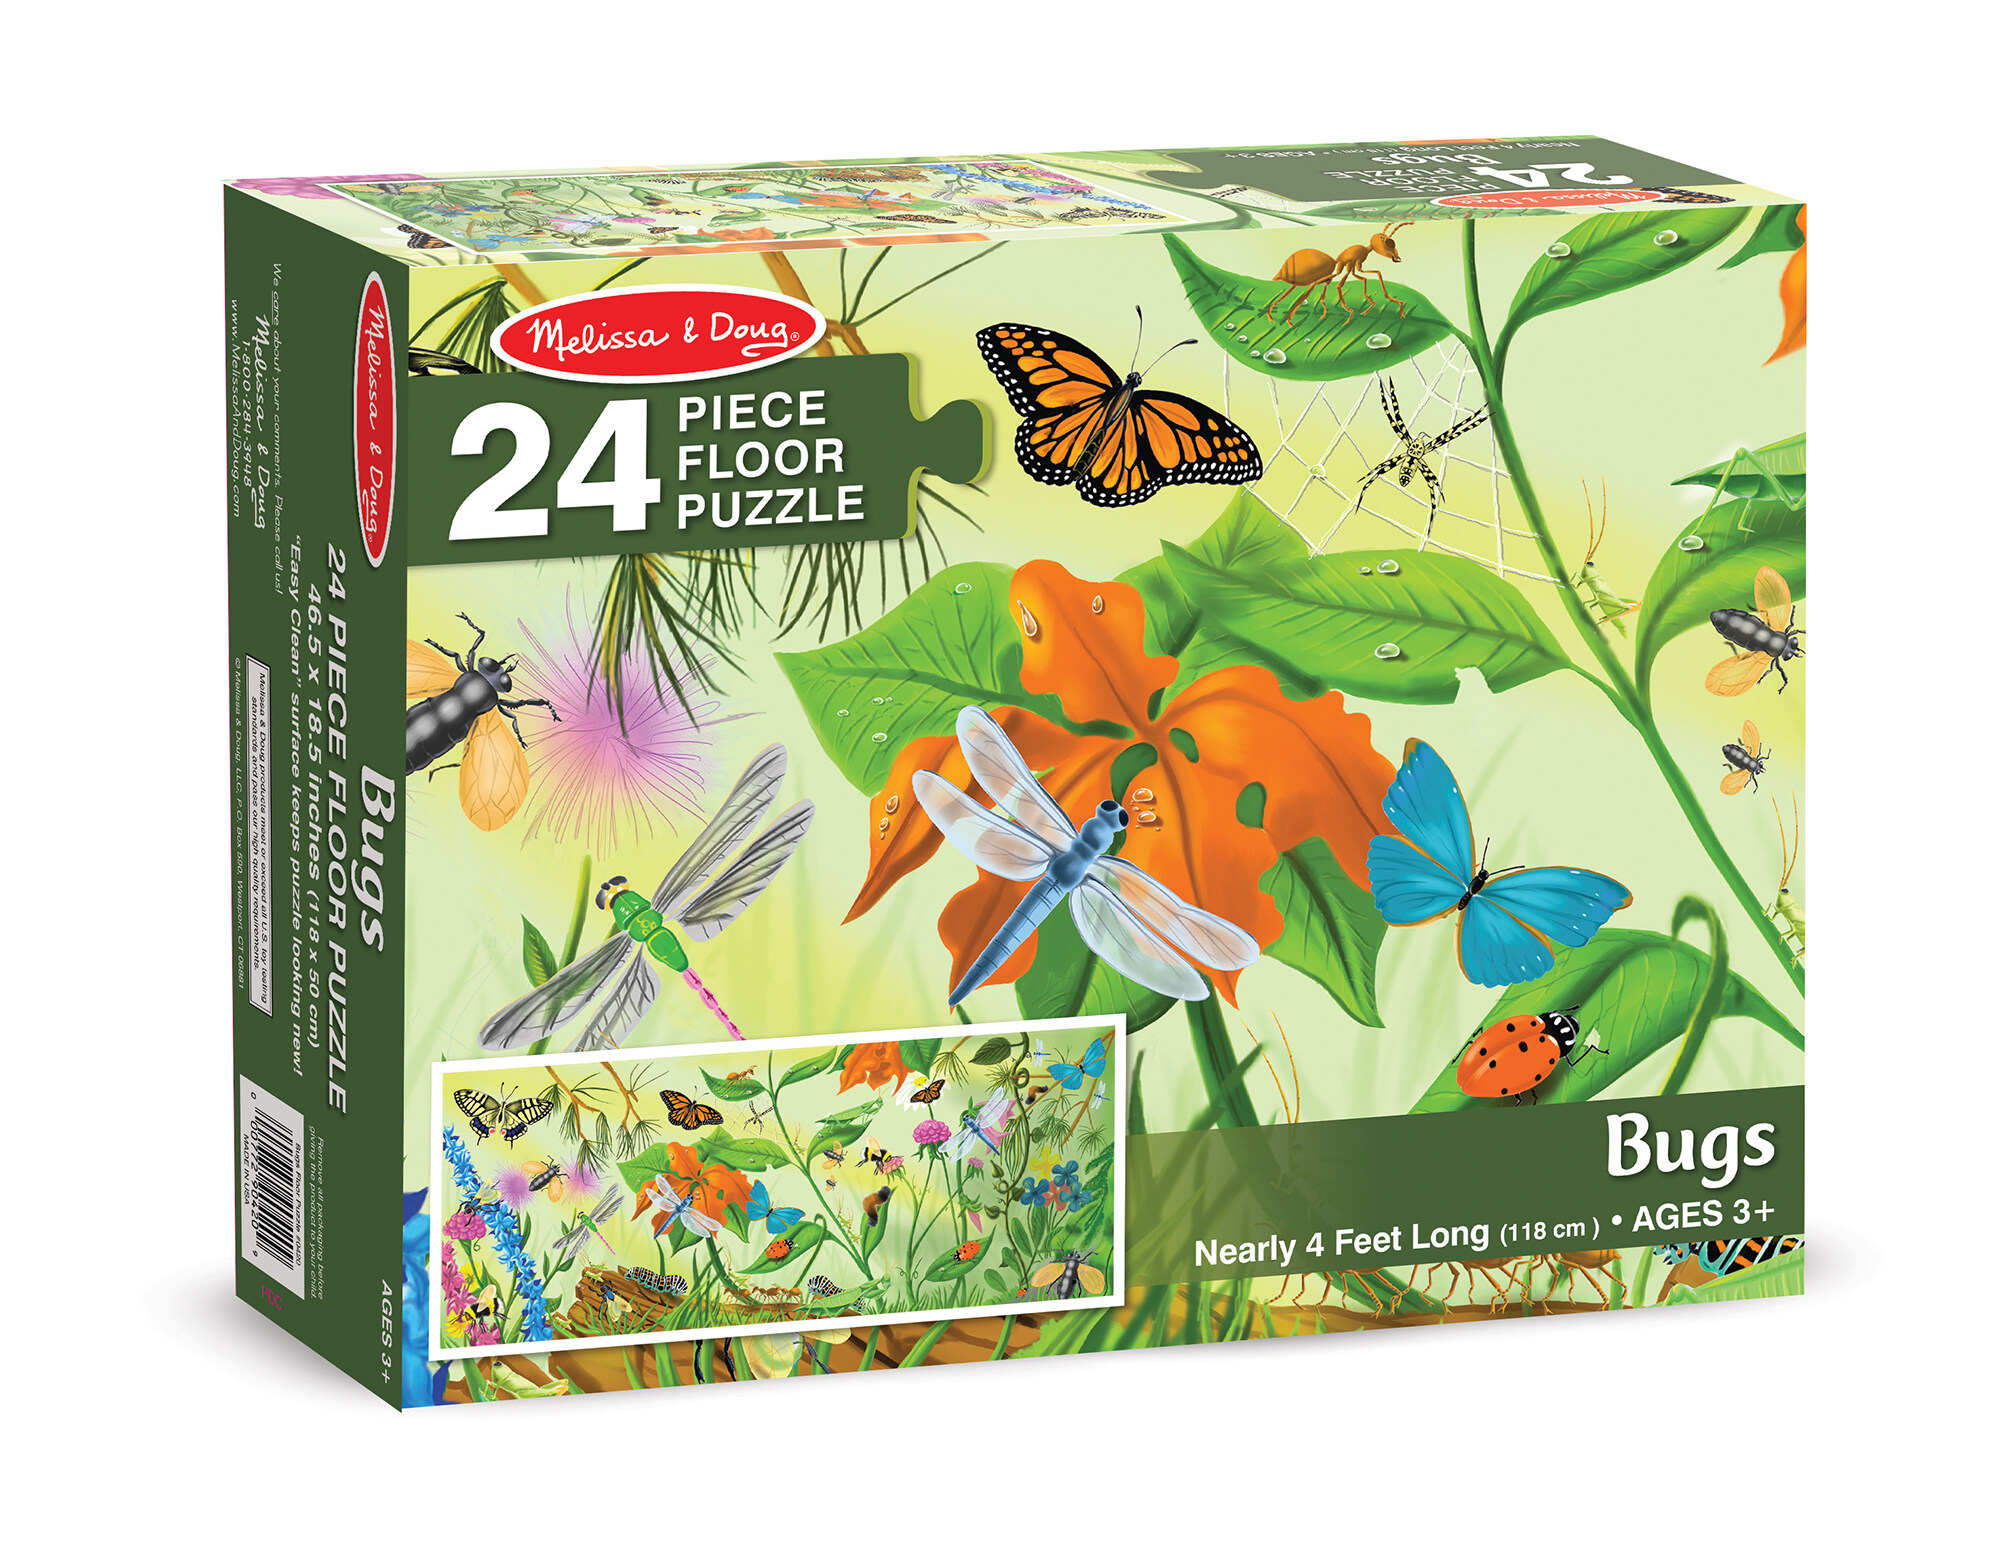 [24-32ชิ้น] จิ๊กซอว์จัมโบ้ รุ่นแมลง ดับเพลิง บาร์น Melissa & Doug Bugs Jumbo Floor Puzzle 24 Pcs หลากรุ่น 420/436/2923 รีวิวดีใน Amazon USA ขนาด 90x60cm ชิ้นเท่าฝ่ามือ สี รุ่นแมลง สี รุ่นแมลง